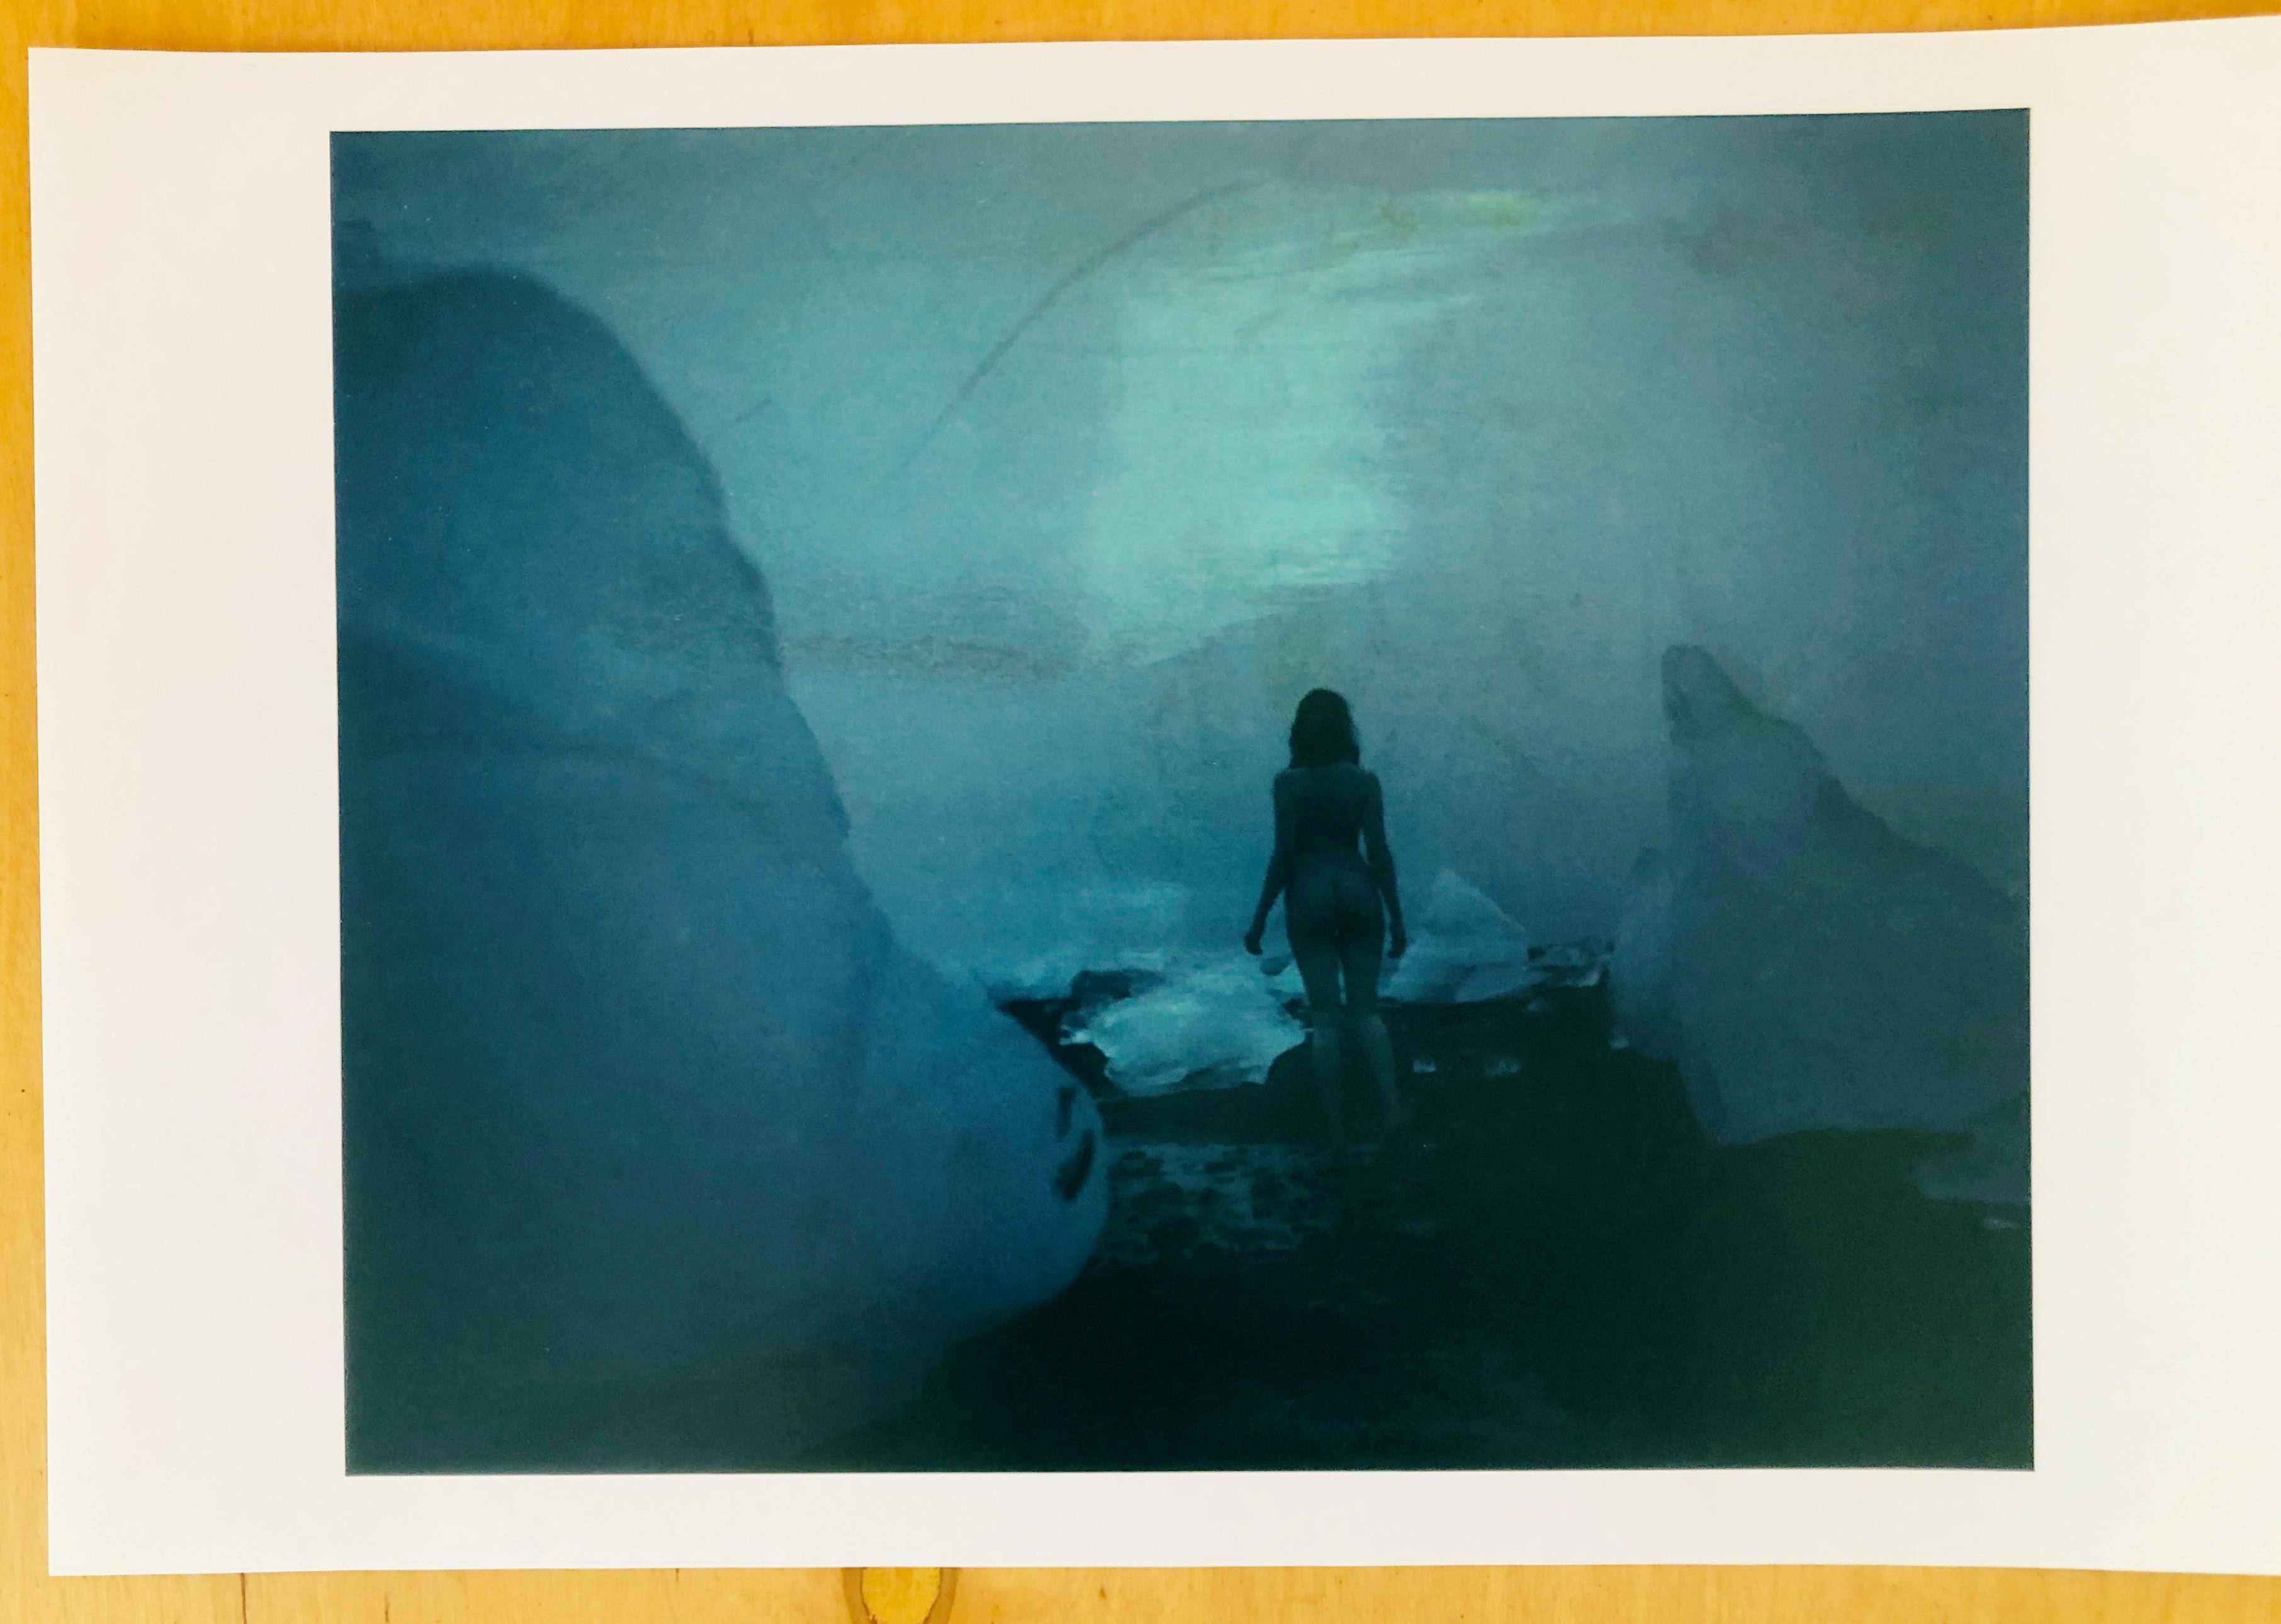 Blaues Island – Zeitgenössisch, Nackt, Frauen, Polaroid, 21. Jahrhundert – Photograph von Sven van Driessche